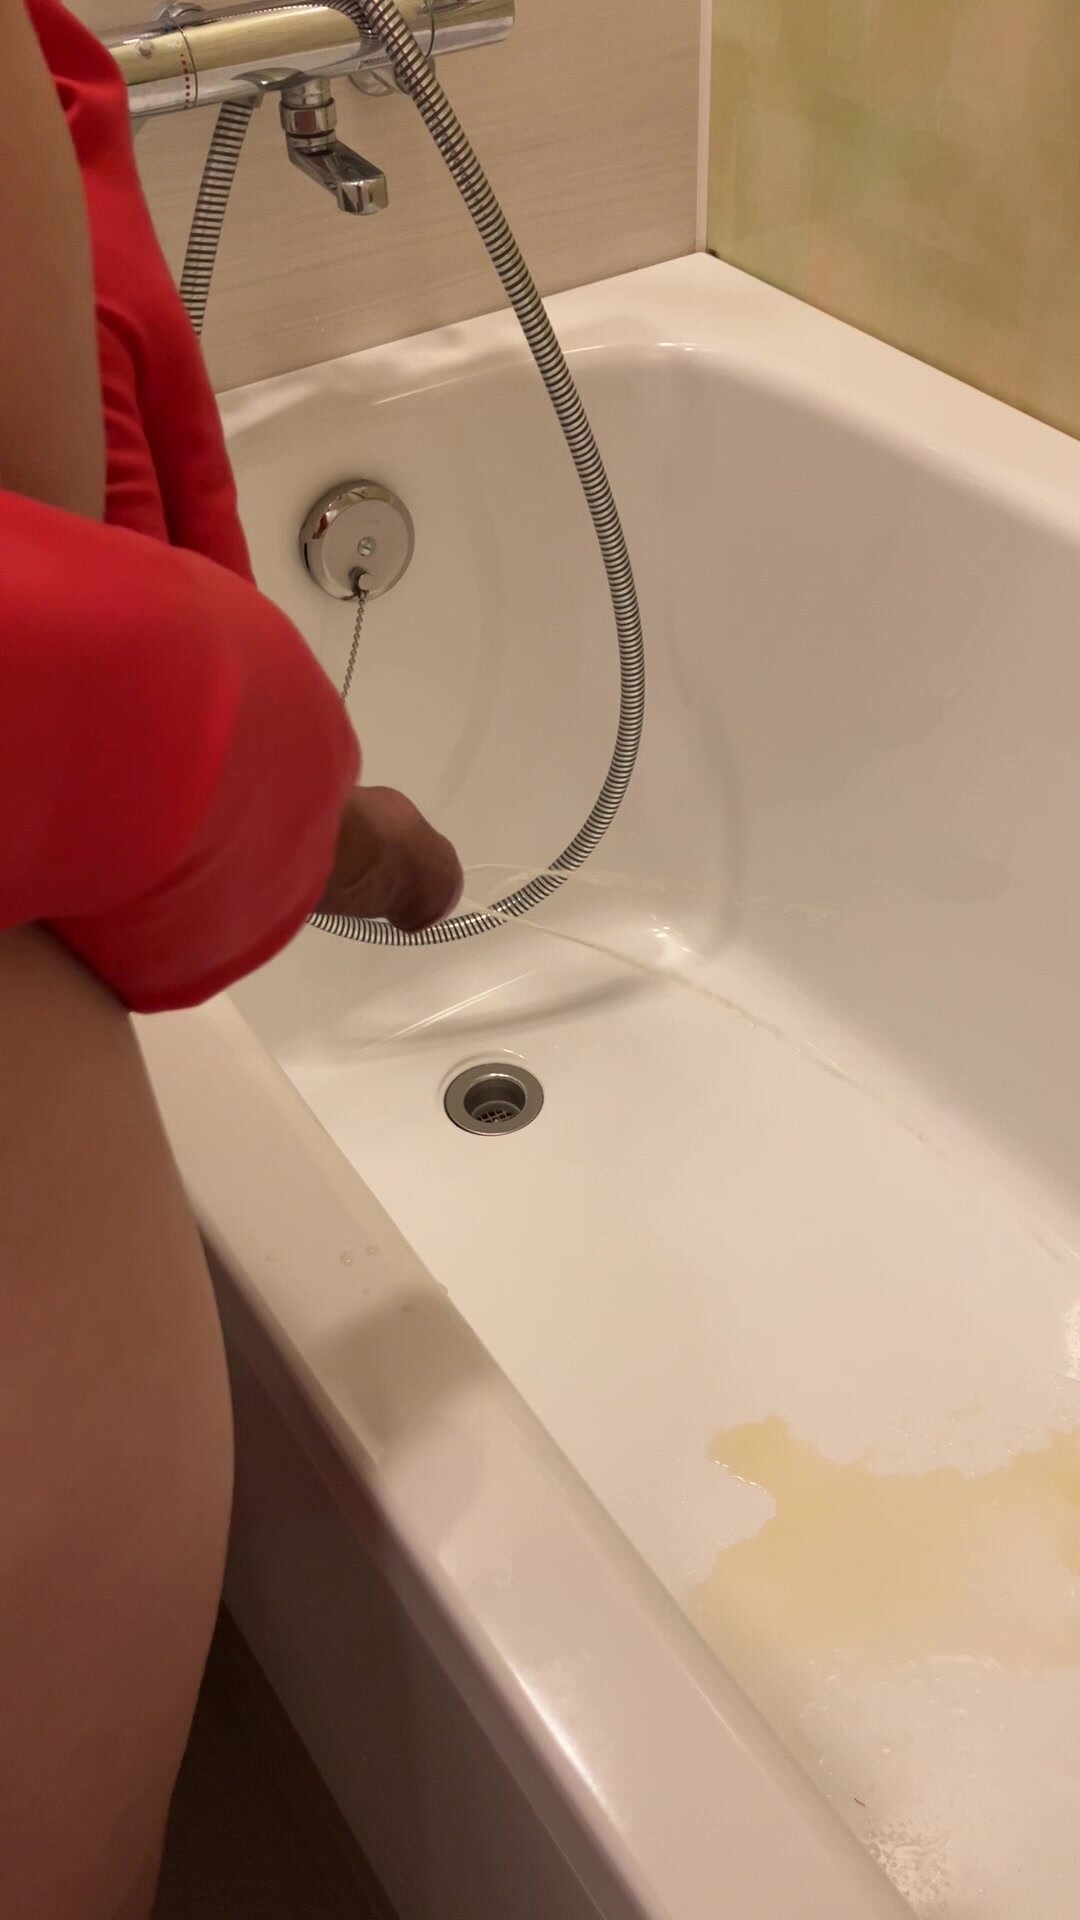 Pissing into a bathtub